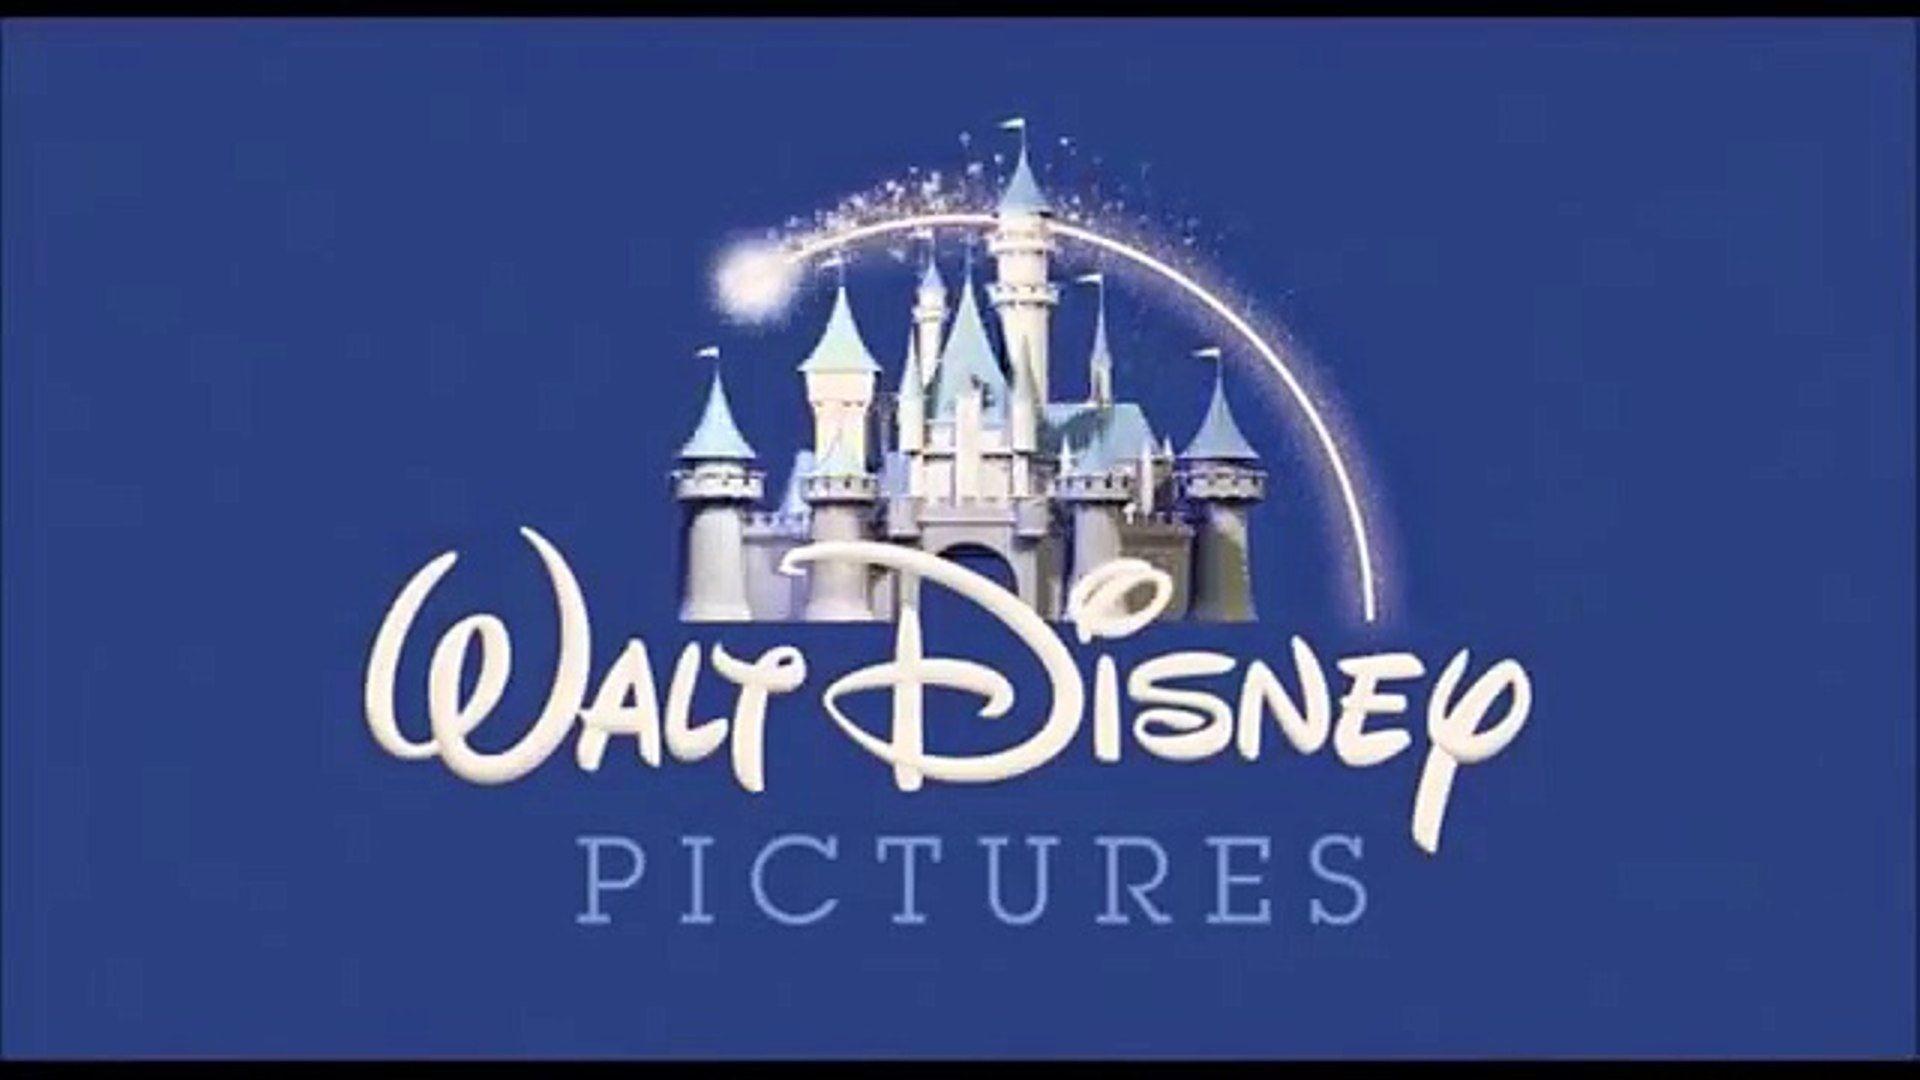 Disney Pixar Animation Studios Logo - Walt Disney Pictures pixar animation studios with wall-e & BnL logo ...